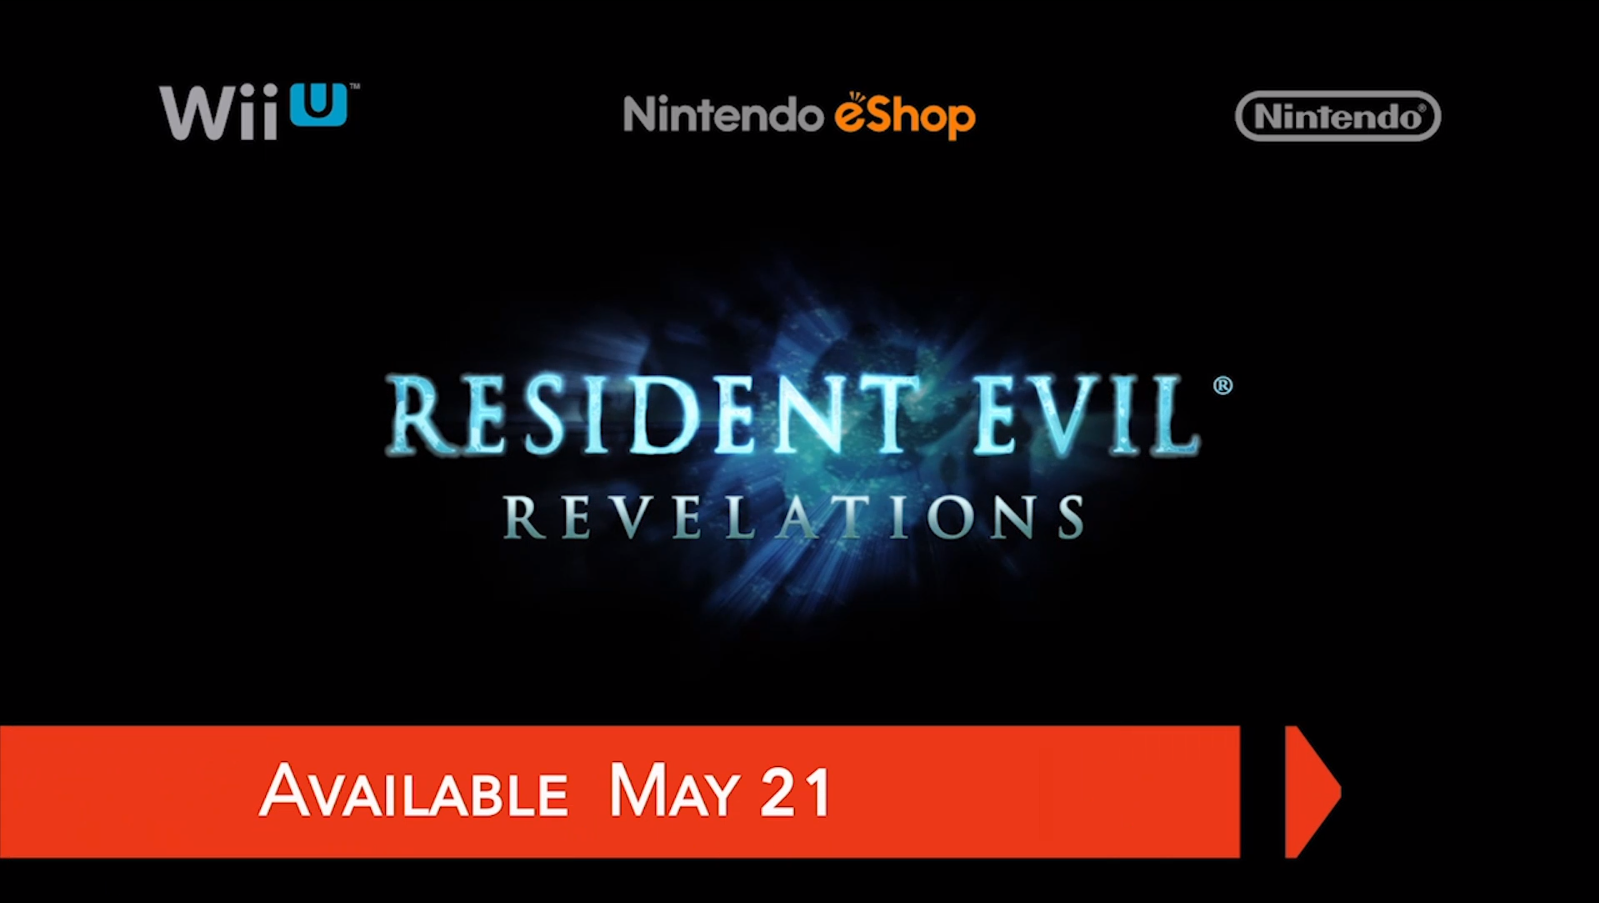 Resident Evil Revelations announced for Wii U.  #NintendoDirectNA